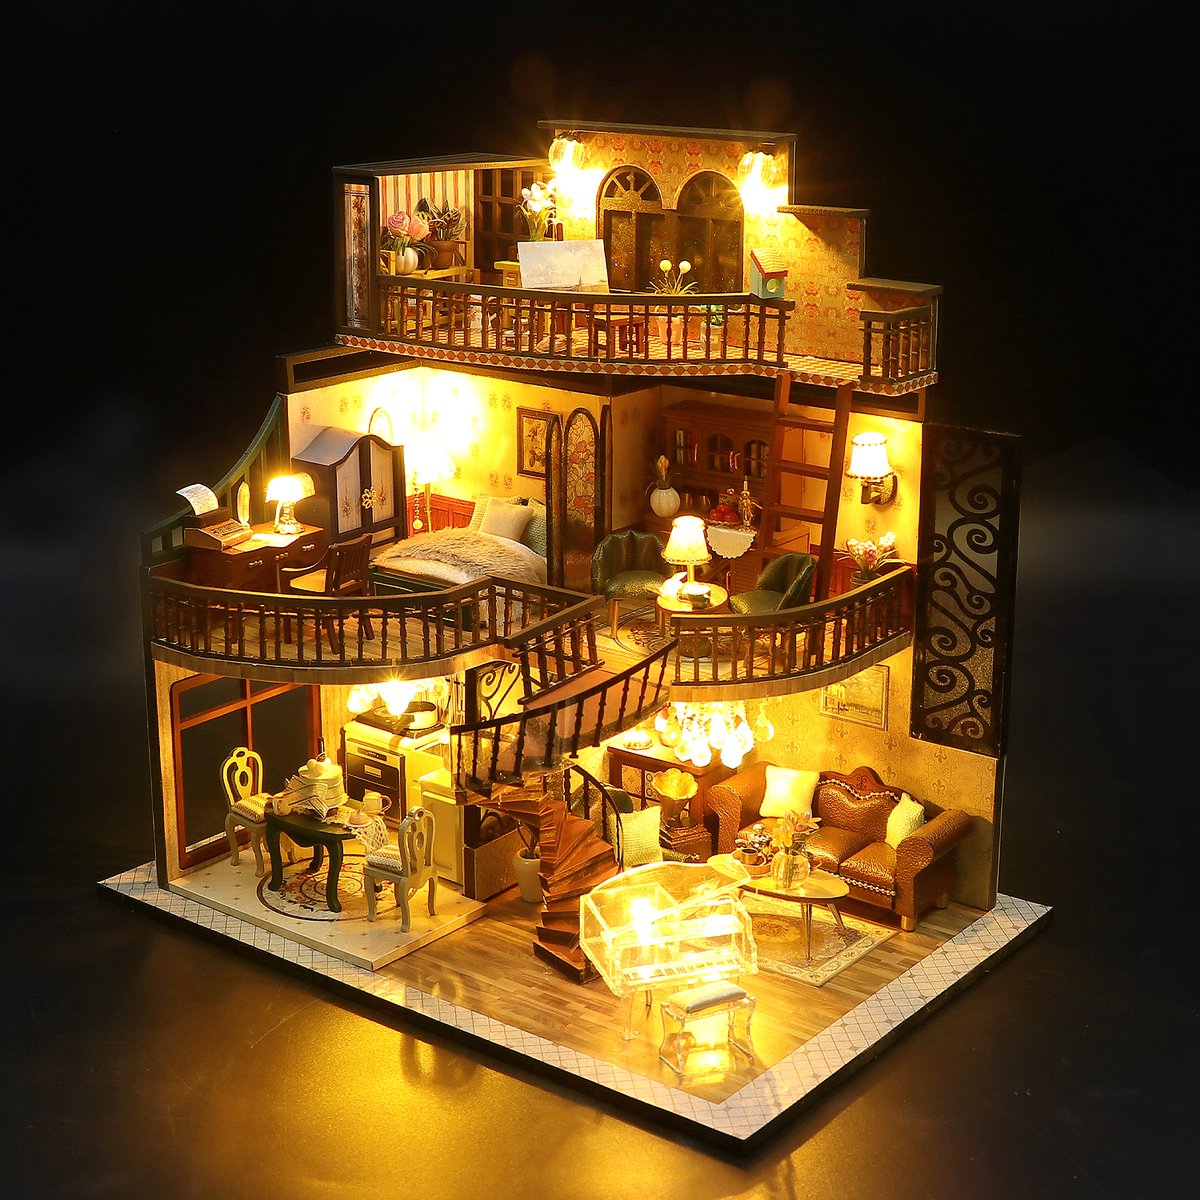 Hongda DIY Miniature Houses - Maquette - Modélisme en bois - Pour